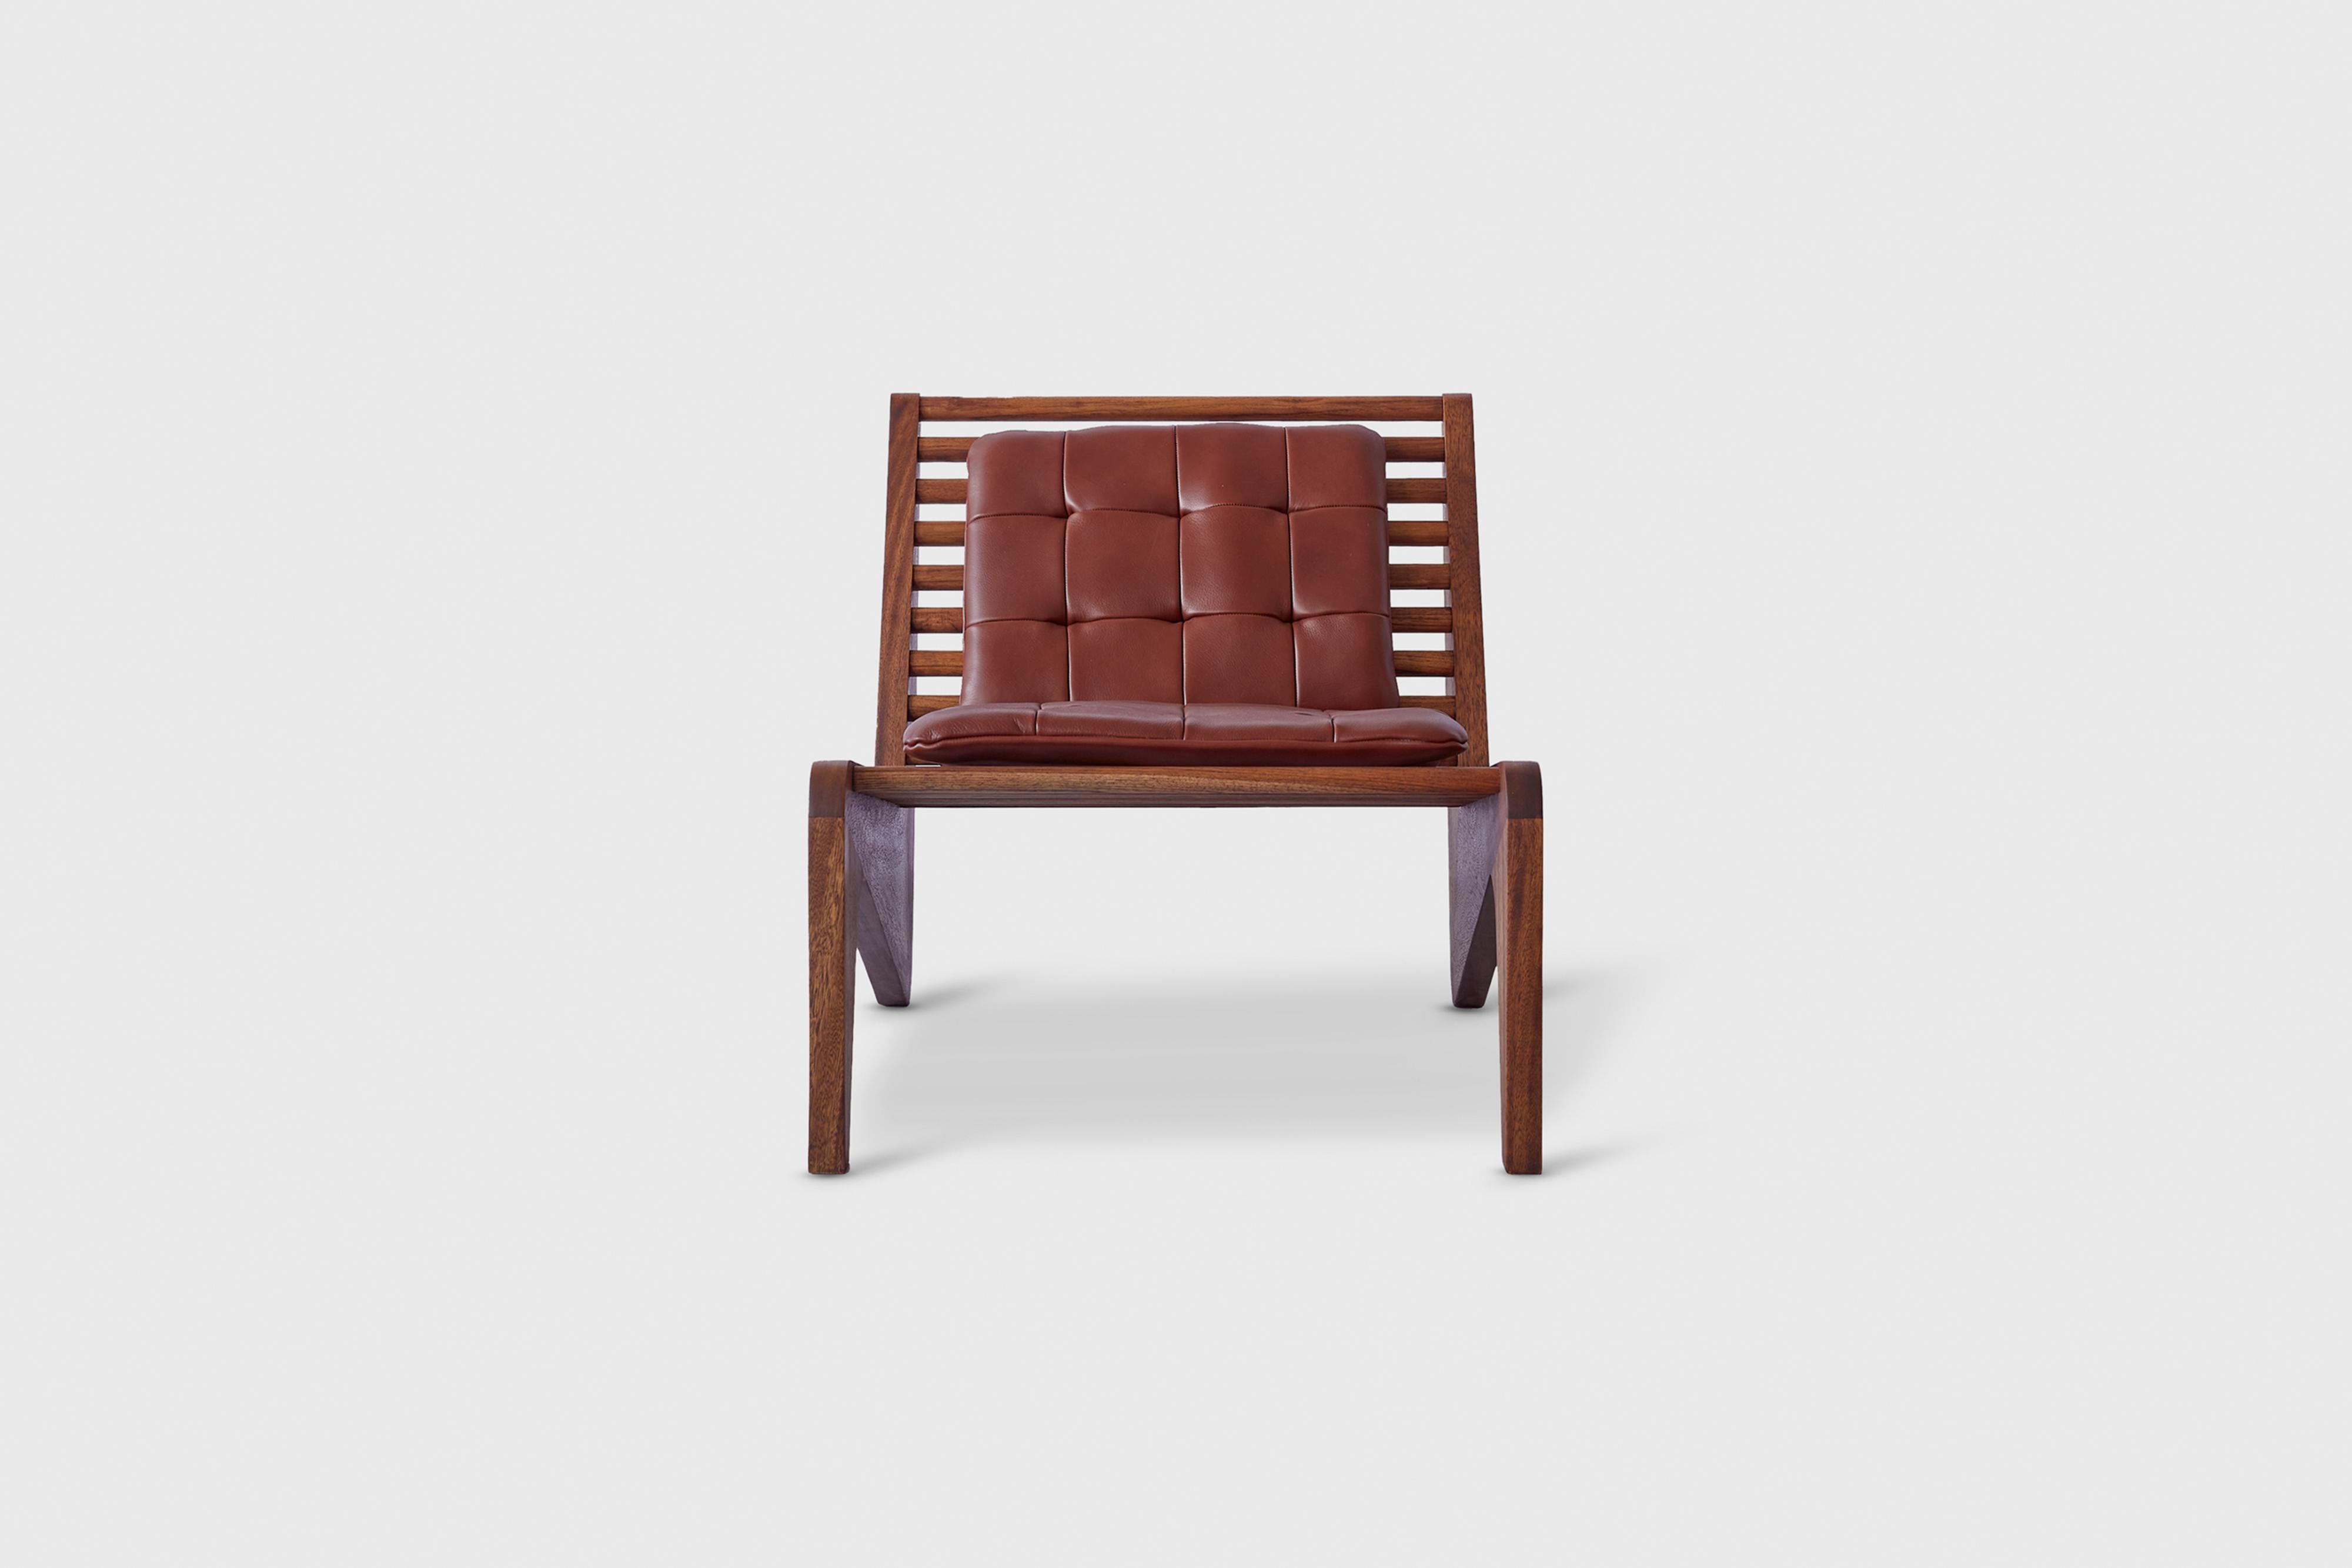 Brauner Sessel Ala von Atra Design
Abmessungen: T 50 x B 46,9 x H 76,9 cm
MATERIALIEN: Lederpads, Mahagoniholz
Erhältlich in Mahagoni oder Teakholz. Erhältlich in anderen Farben.

Atra Design
Wir sind Atra, eine Möbelmarke, die von Atra form